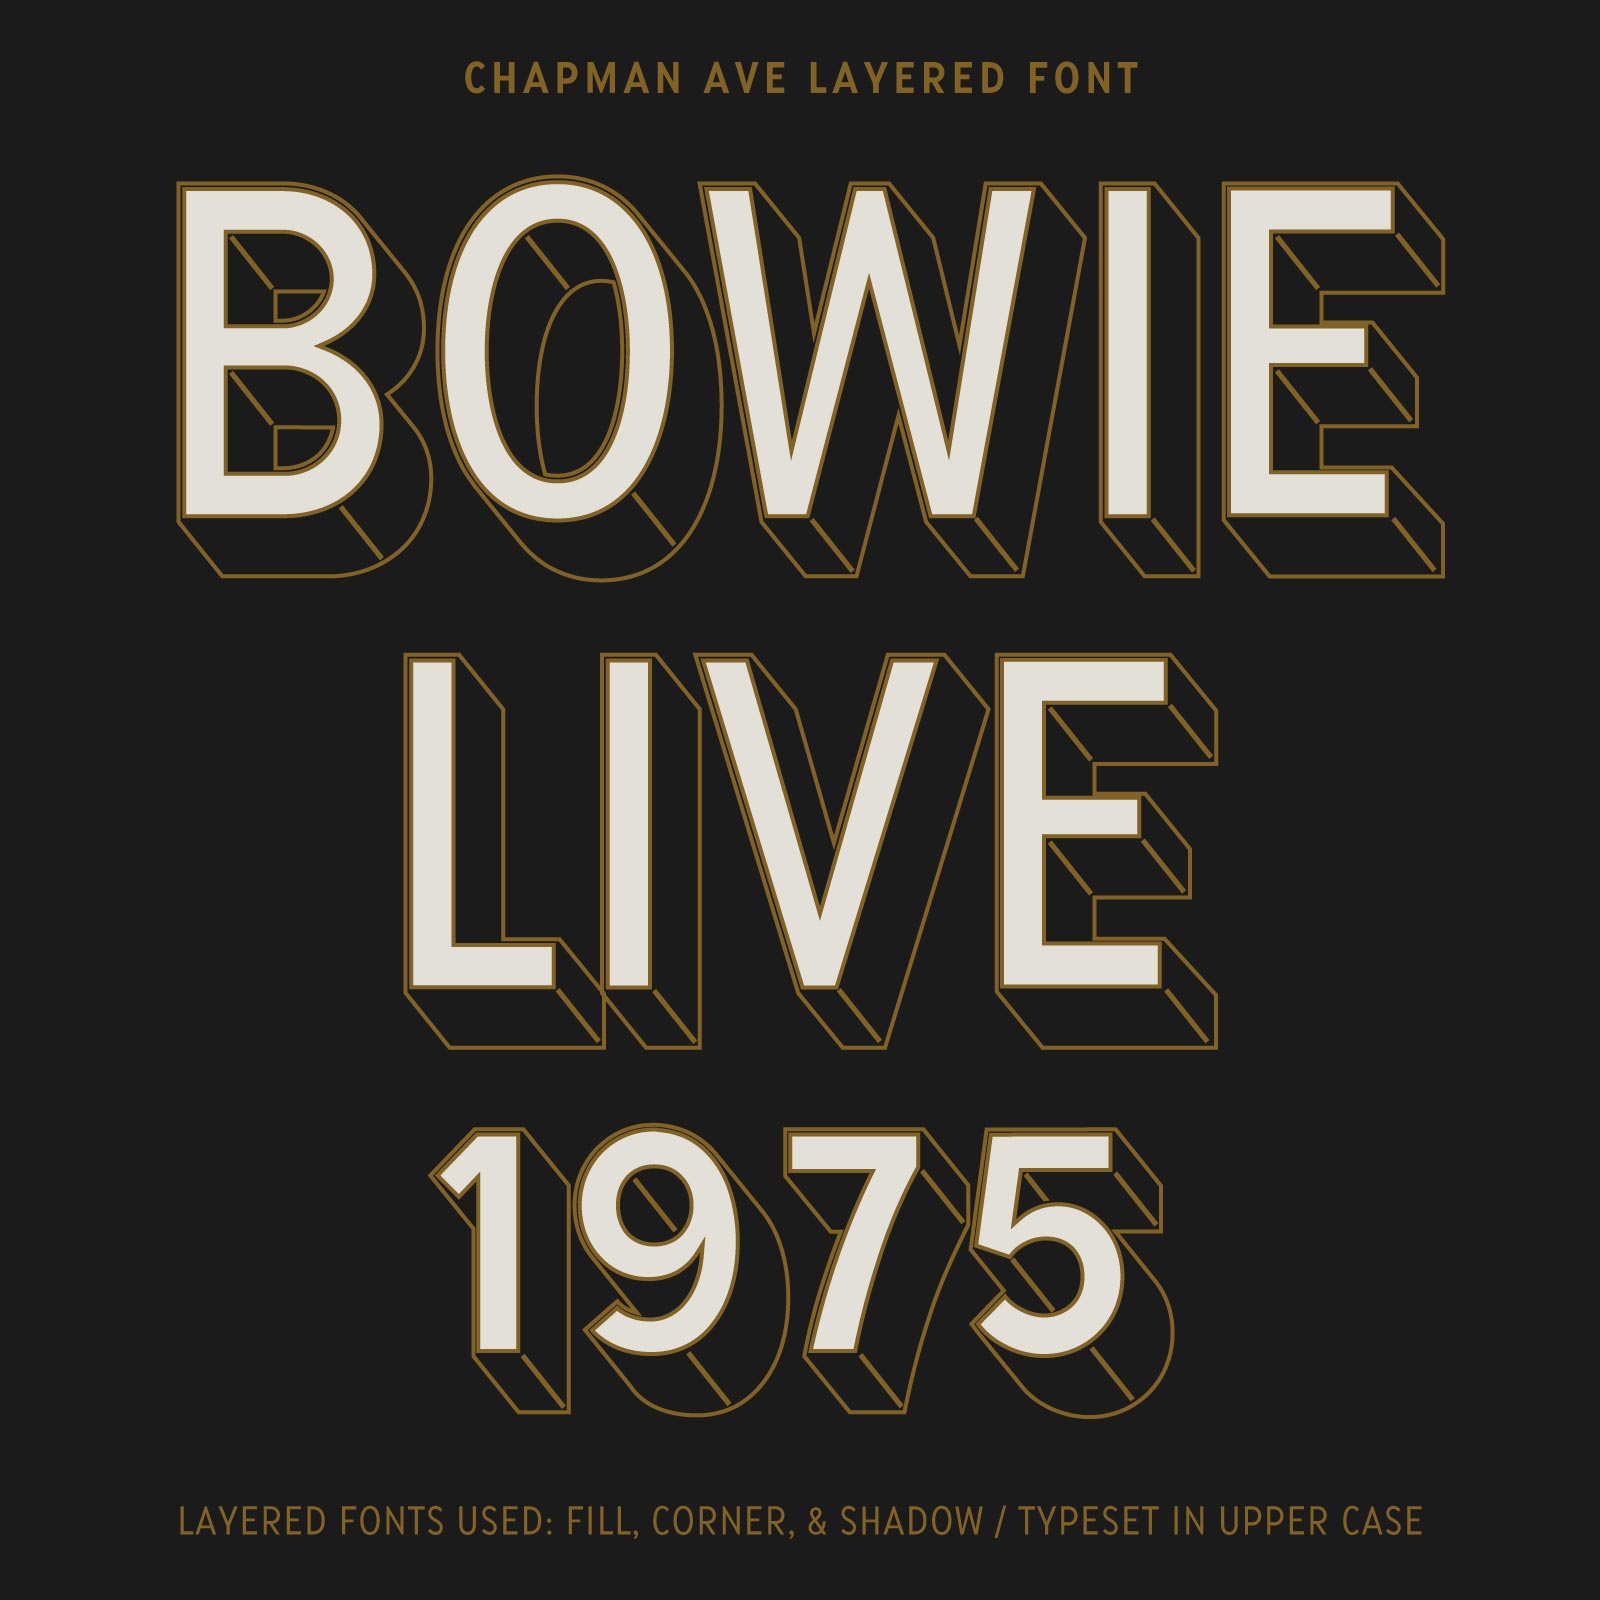 Chapman Ave Font Bowie 1975